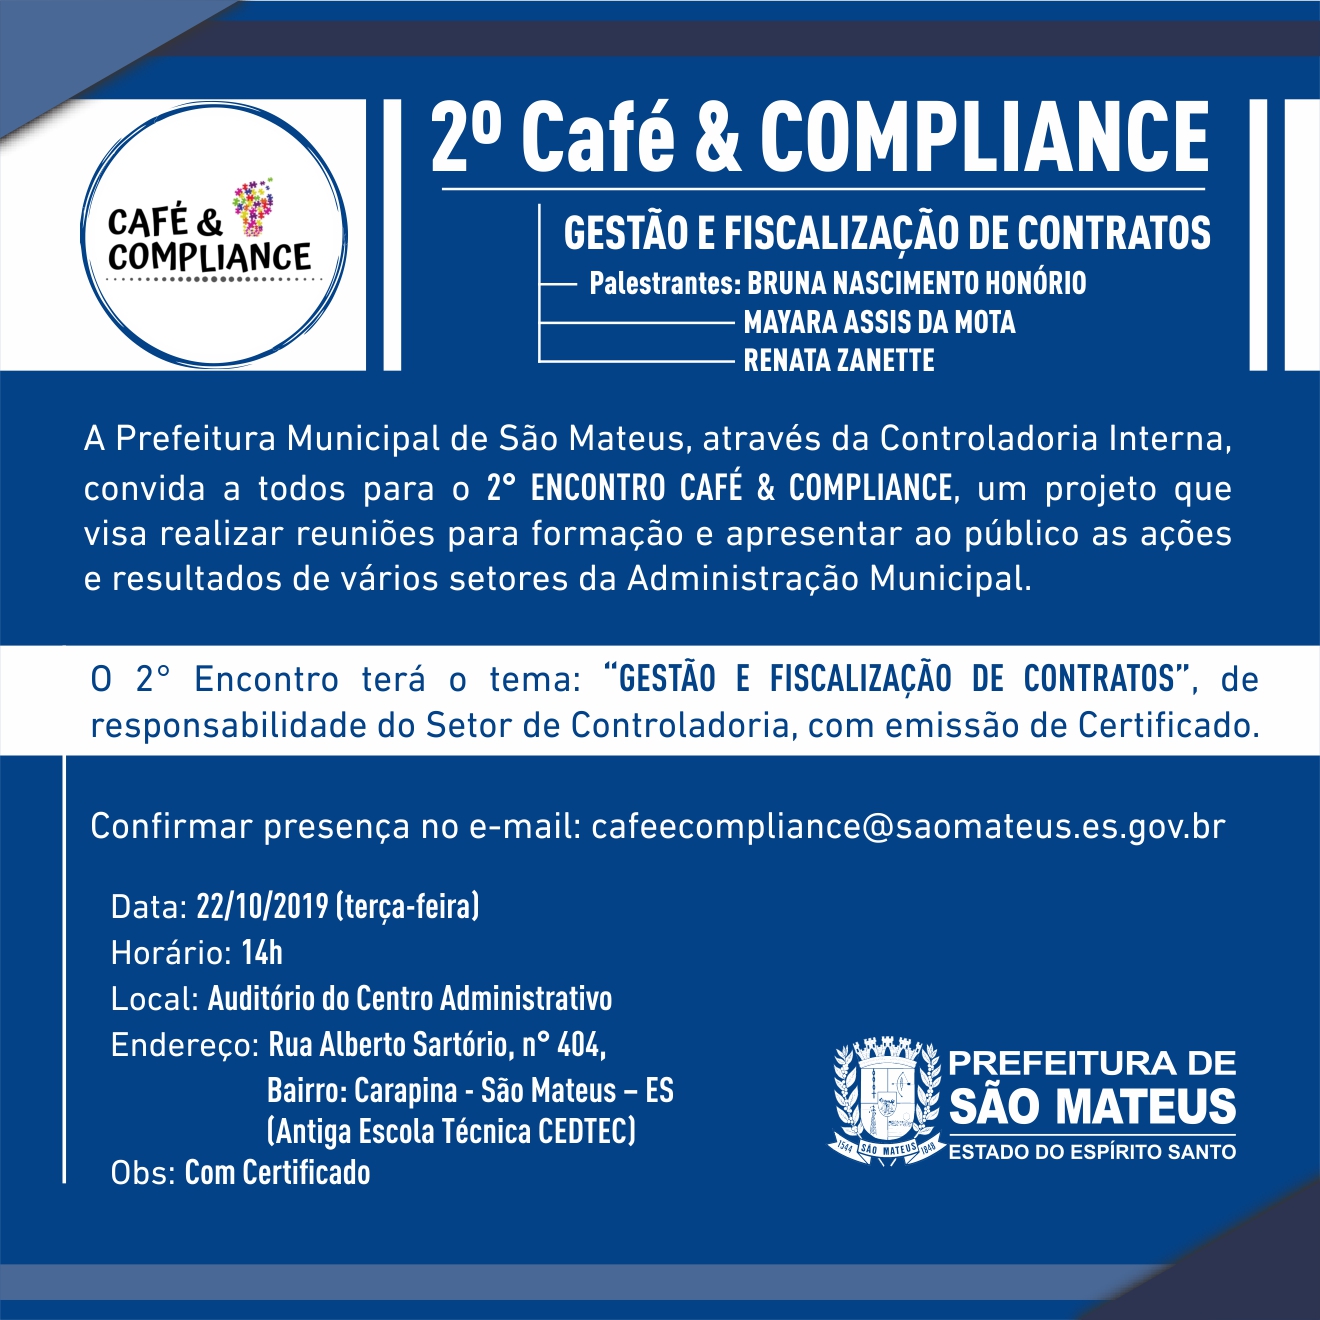 2º Café & Compliance